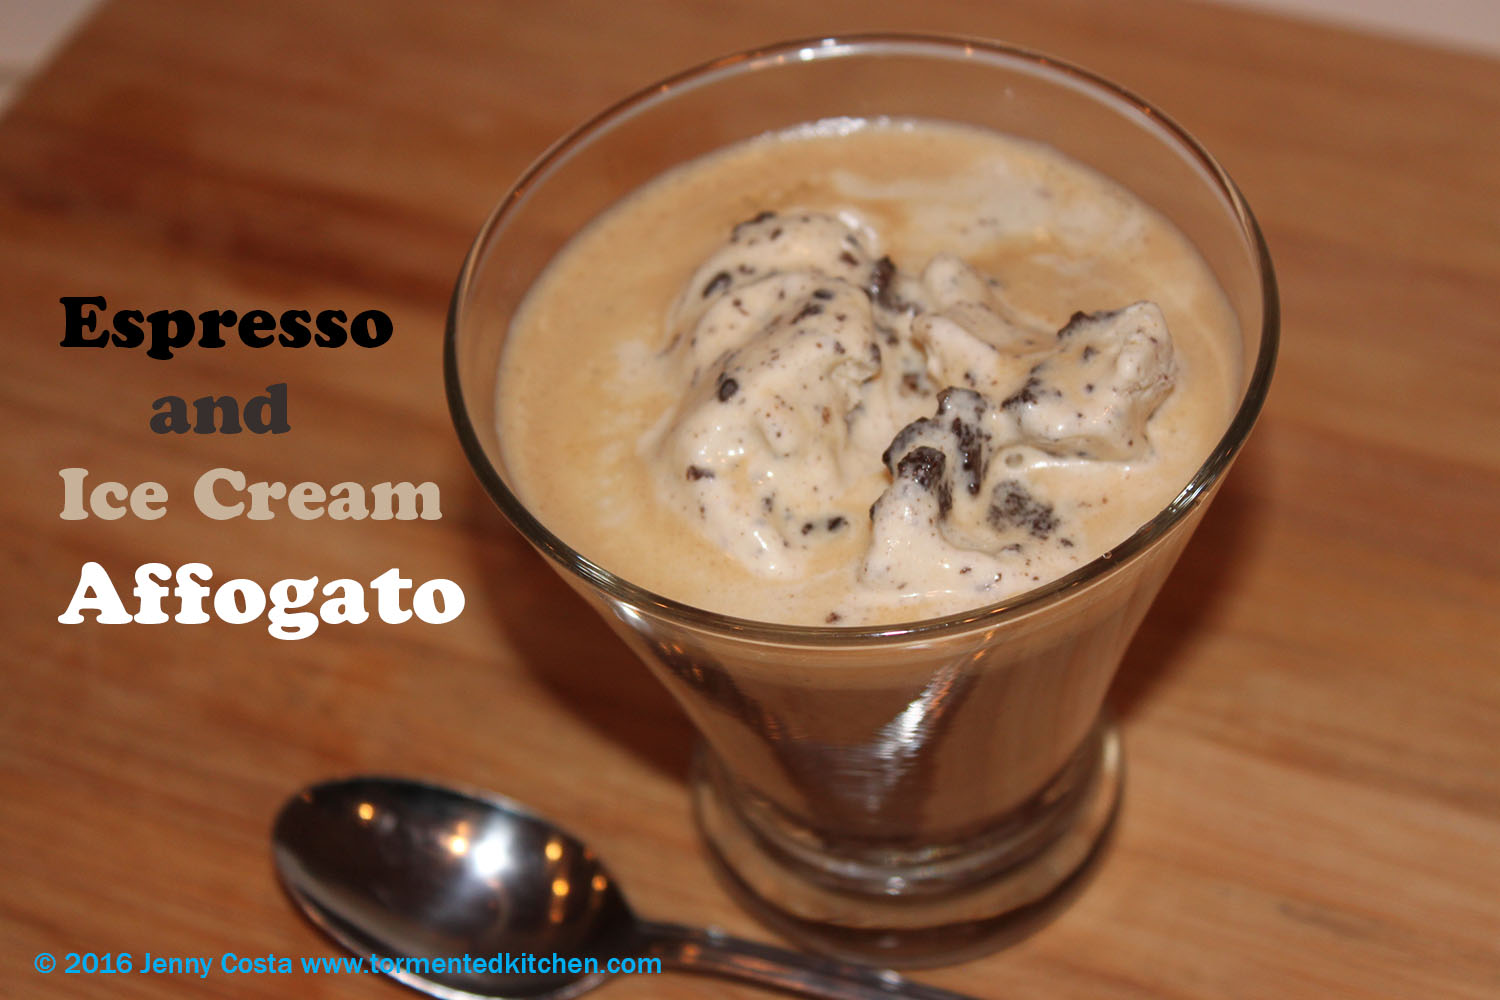 Espresso and Ice Cream Affogato